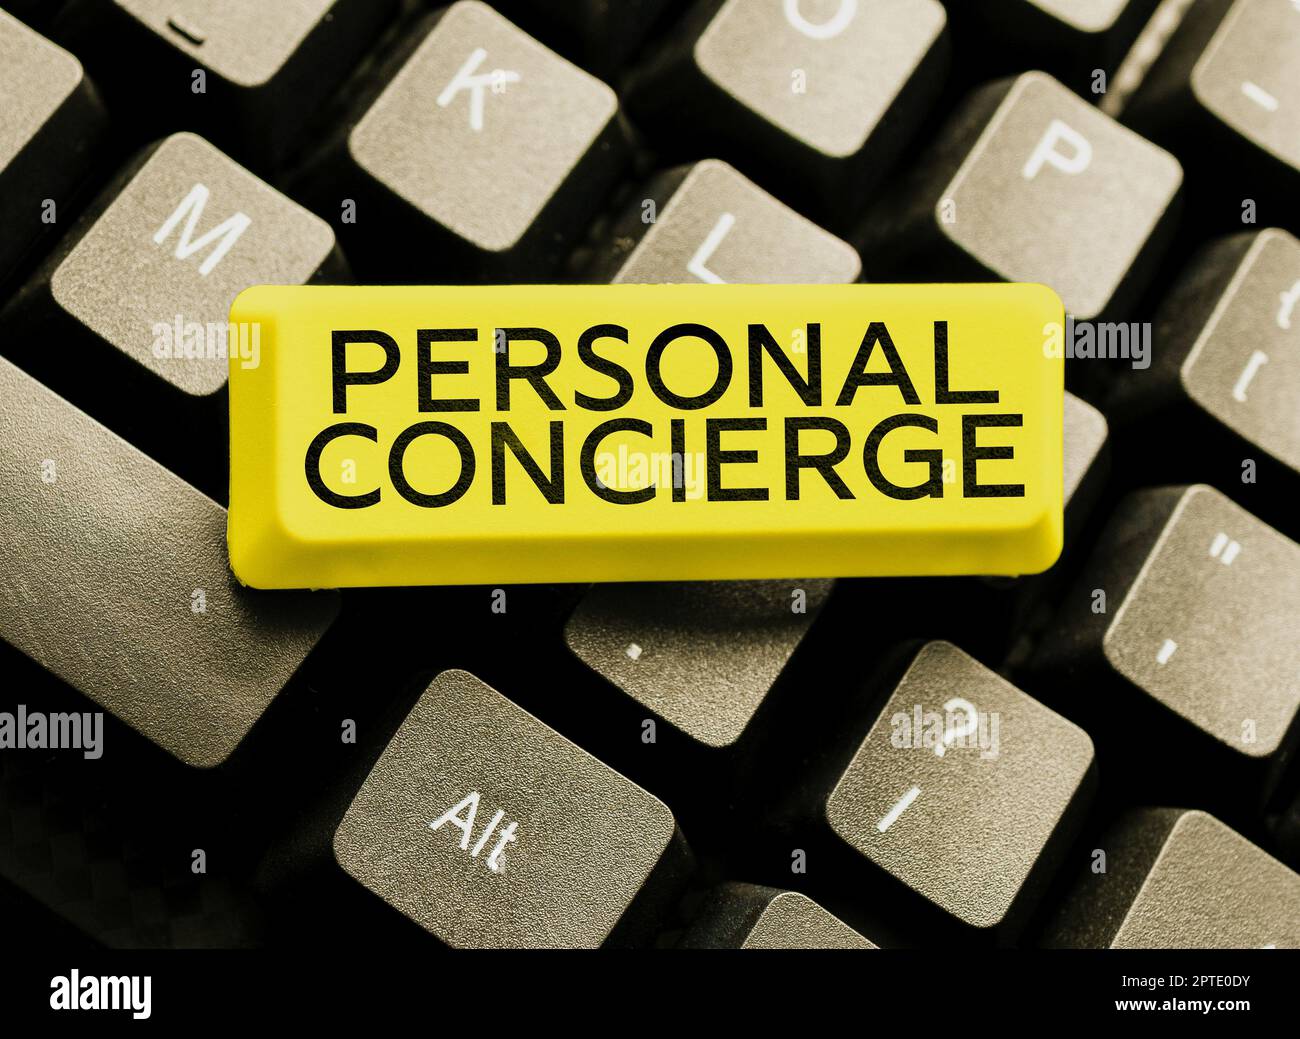 Cartello di testo che mostra Concierge personale, approccio aziendale qualcuno che si arrangierà o farà commissioni Foto Stock